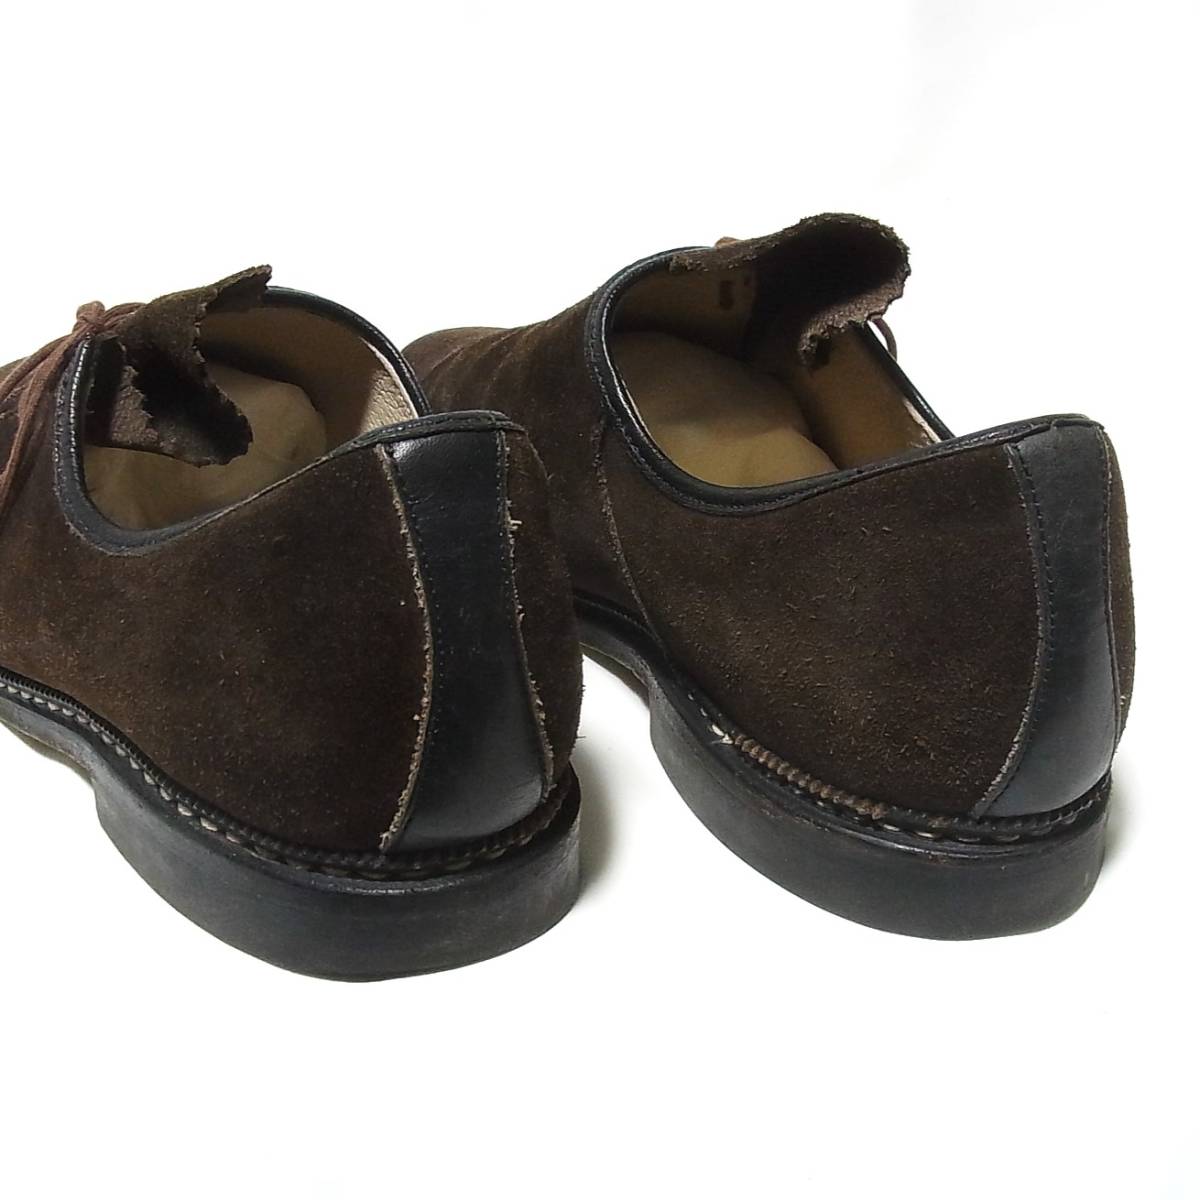 MEINDL マインドル Vintage Haferl shoes/ハファールシューズ 10.5/28‐28.5cm◎濃茶レザー スエード革◎ドイツ製 チロリアン_画像6